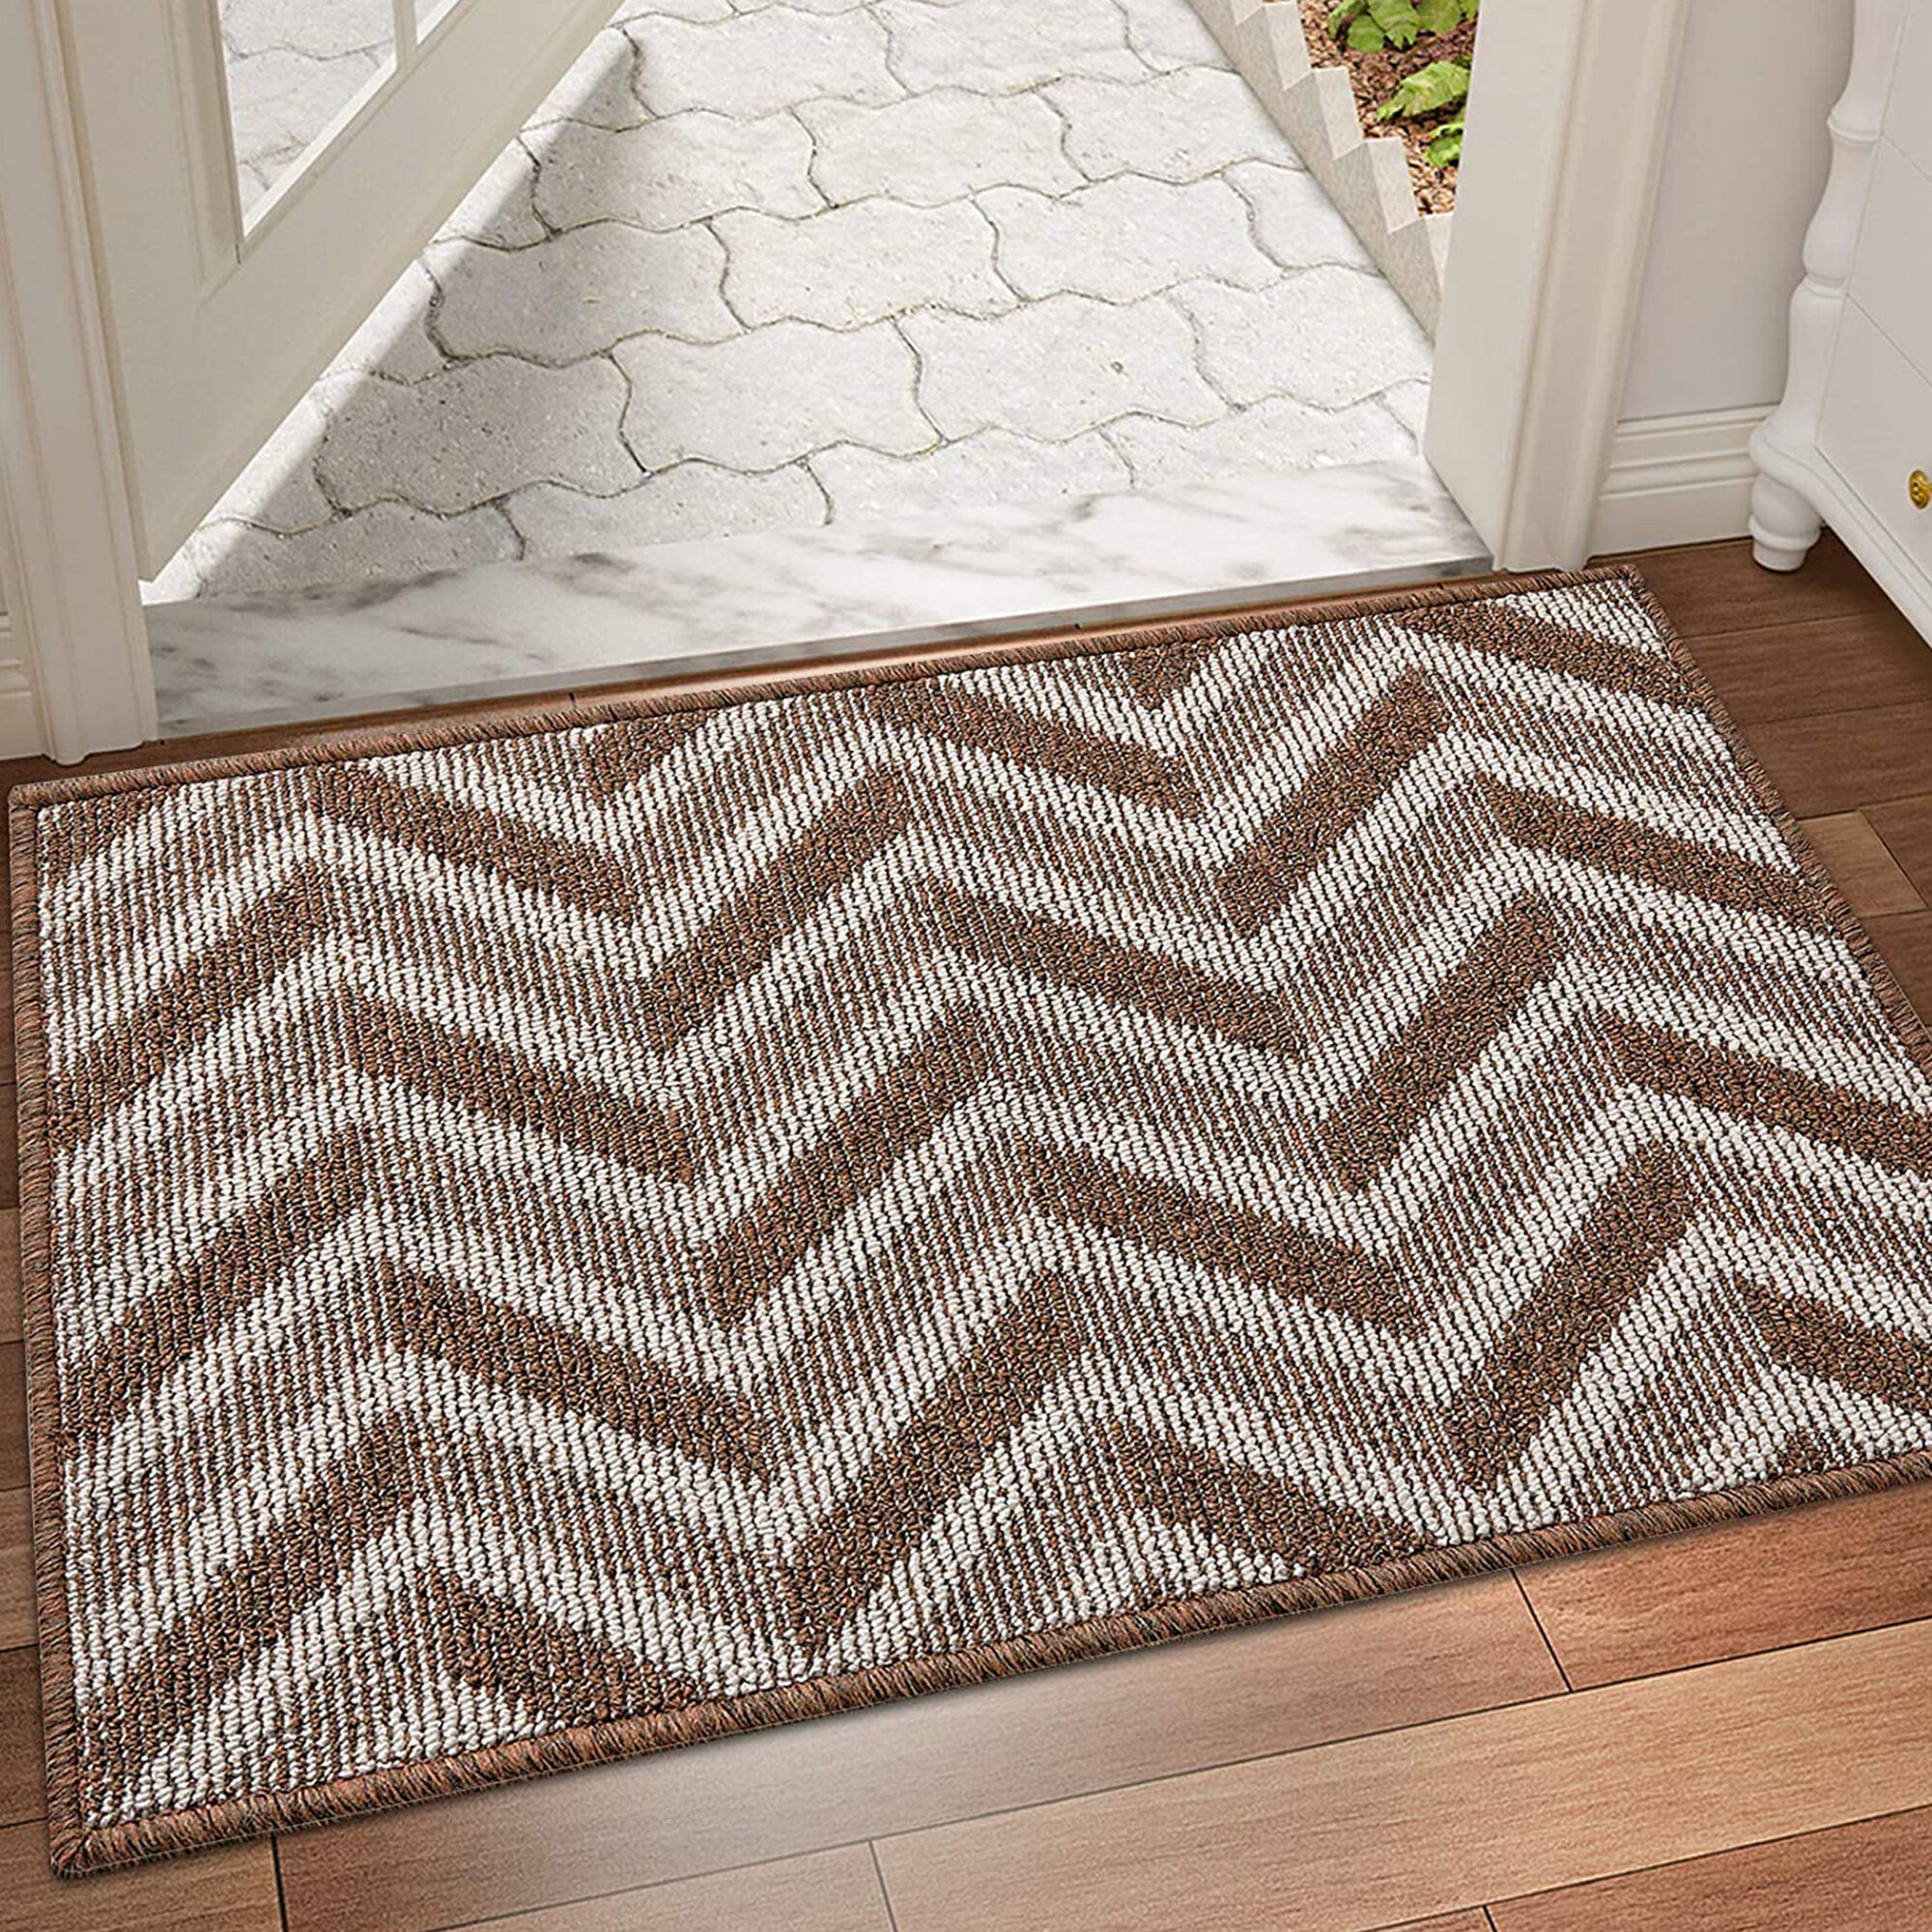 Rubber Doormat Anti Slip Kitchen Hallway Room Mats Best Quality Indoor & Outdoor 